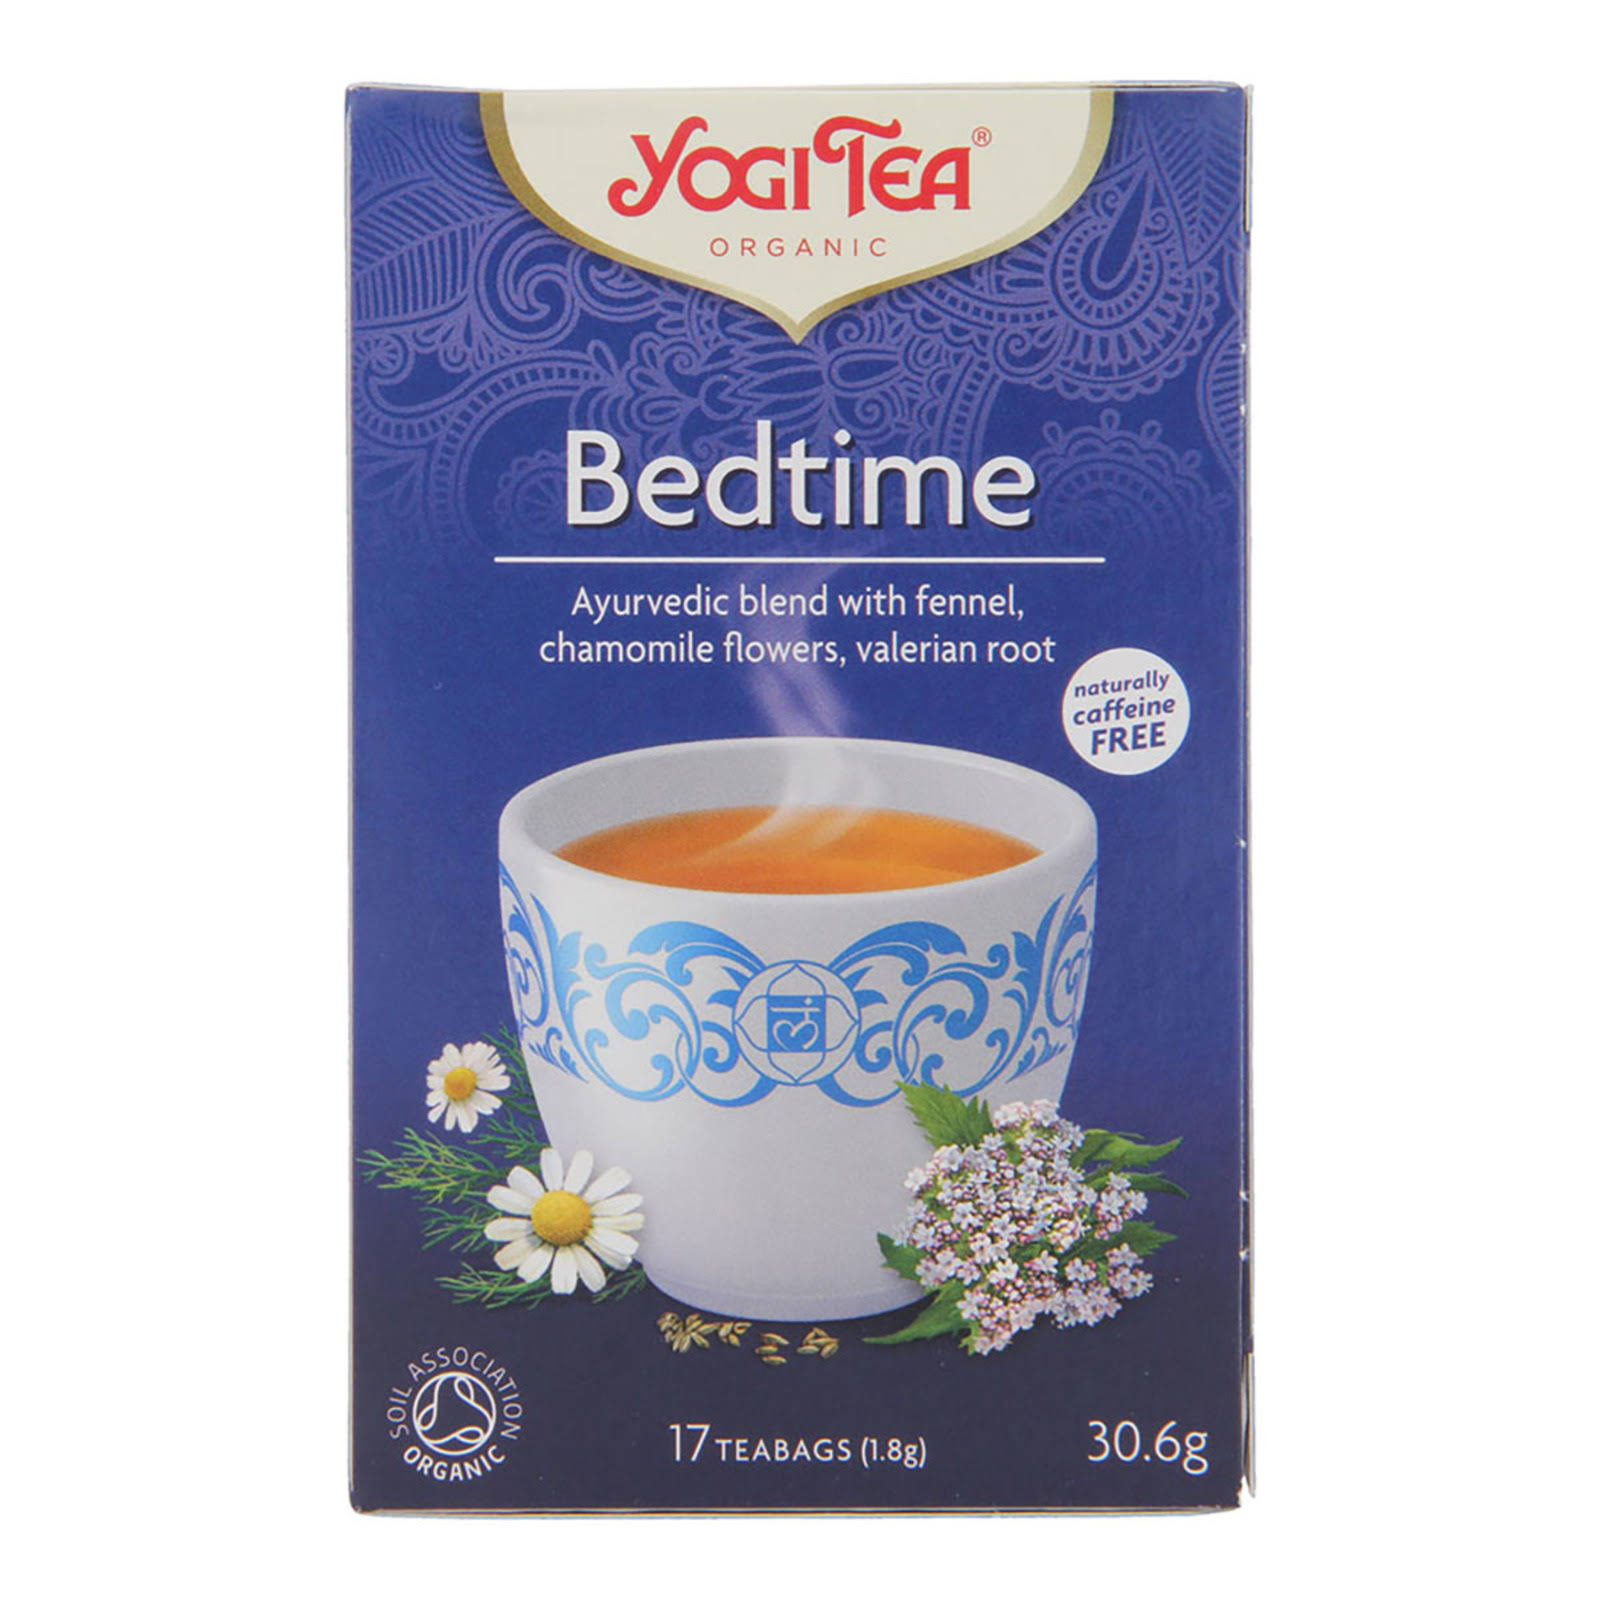 Yogi Tea Organic Bedtime Tea - 17 Tea Bags, 30.6g